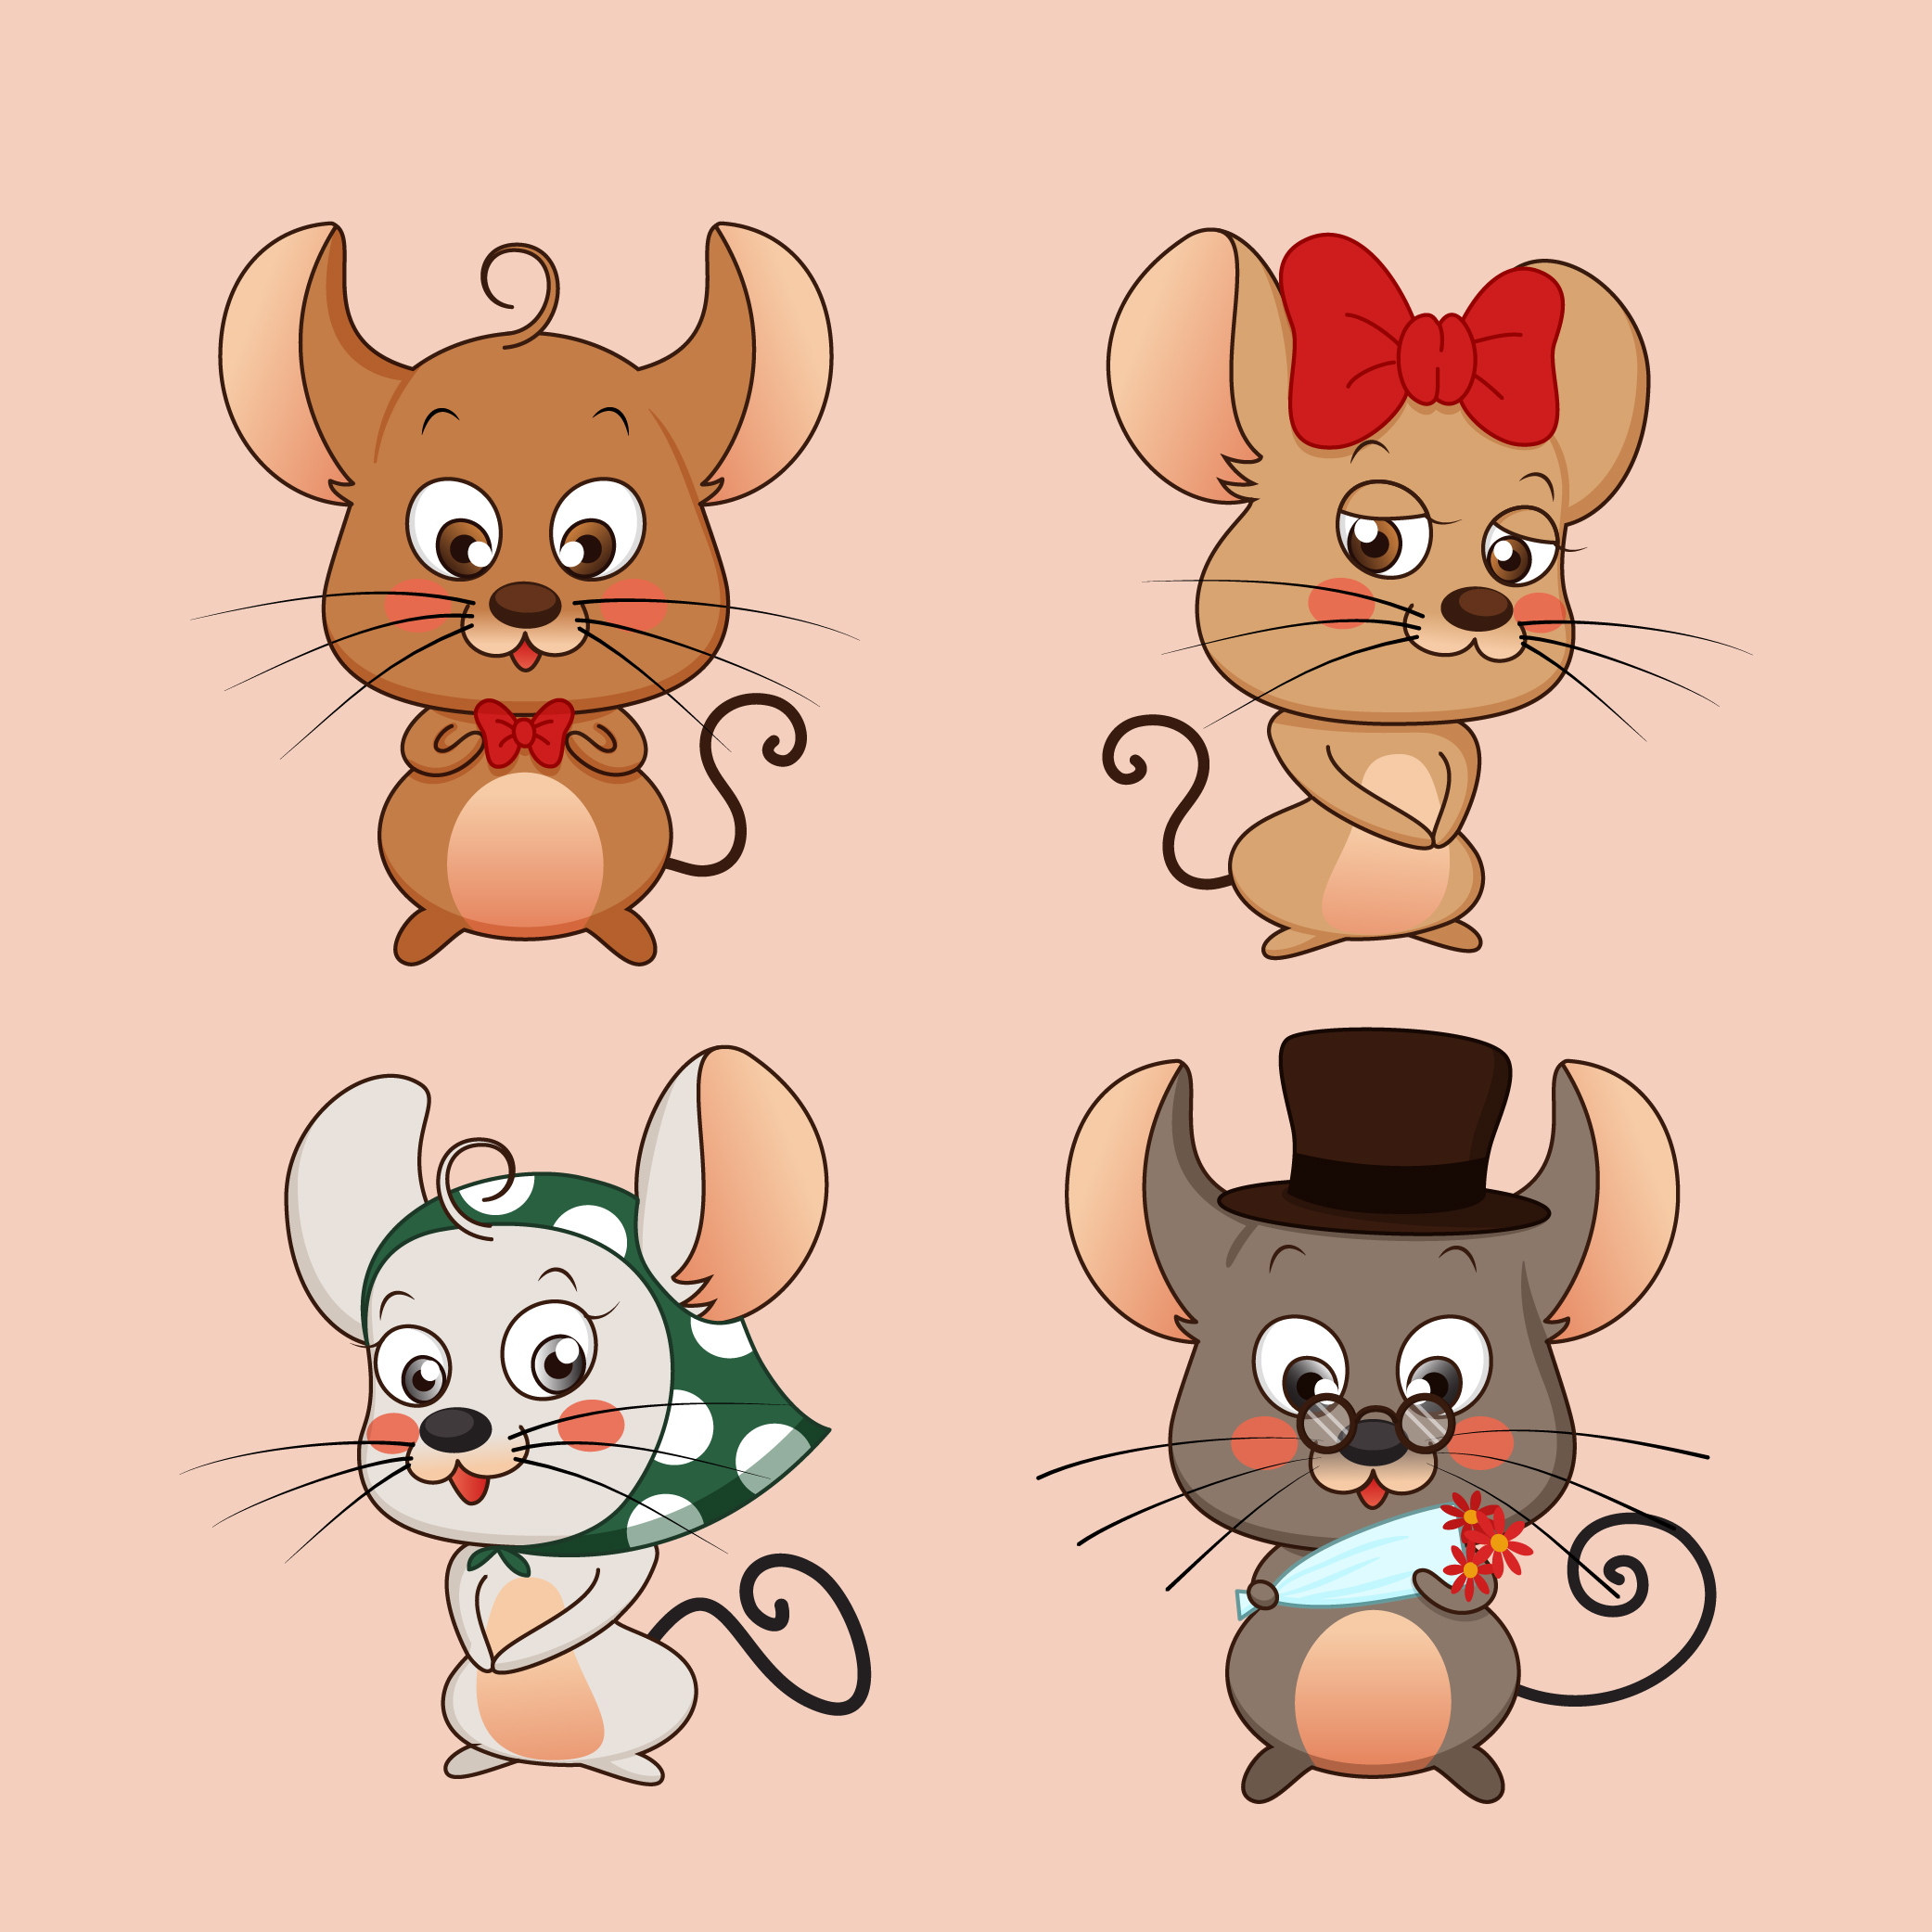 新年卡通动物鼠可爱形象设计素材矢量图库源文件ai下载图片